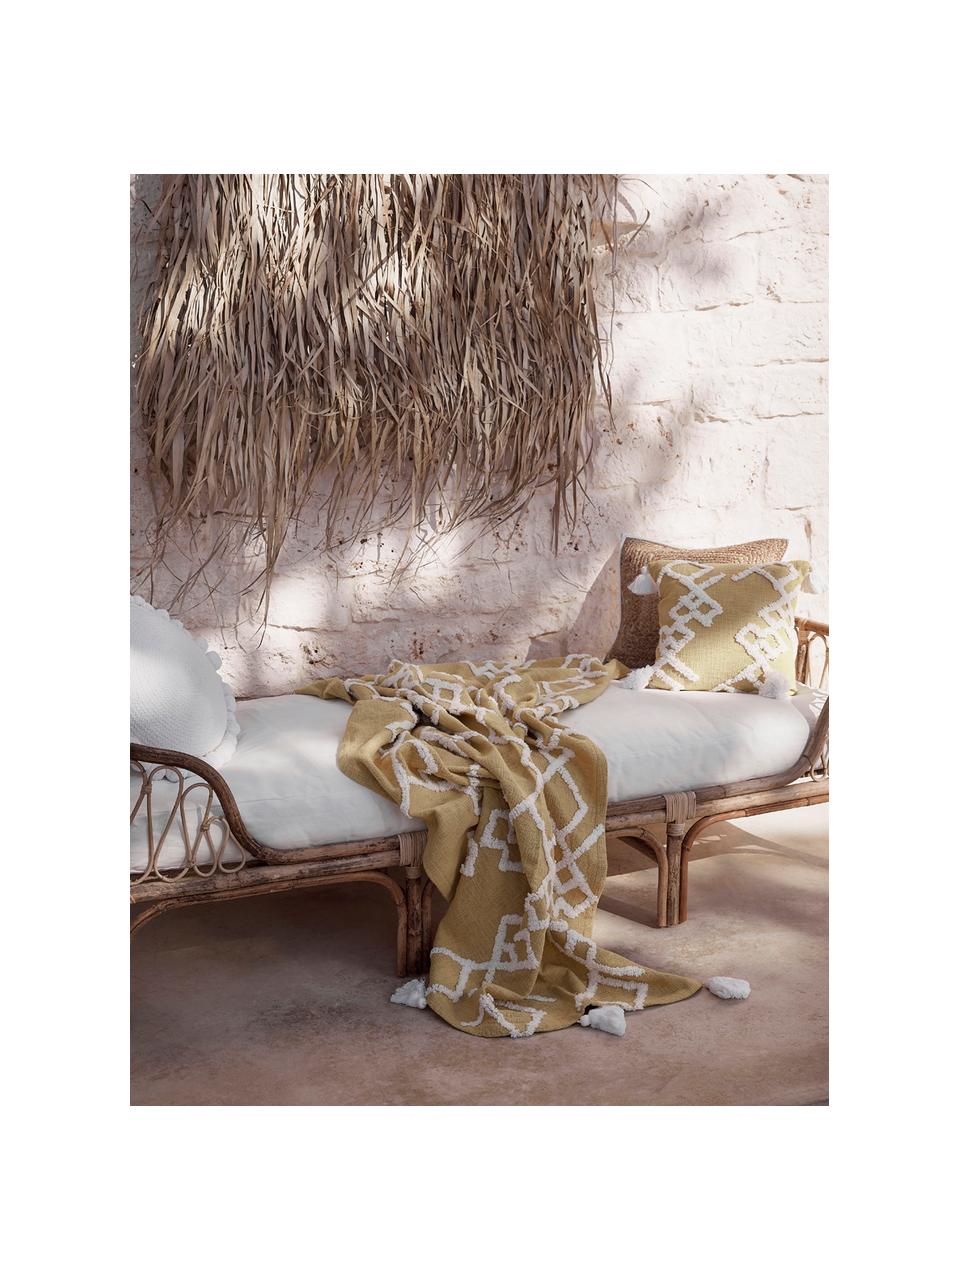 Lit de repos en bambou avec assise rembourrée Blond, Bambou, blanc, larg. 185 x prof. 78 cm